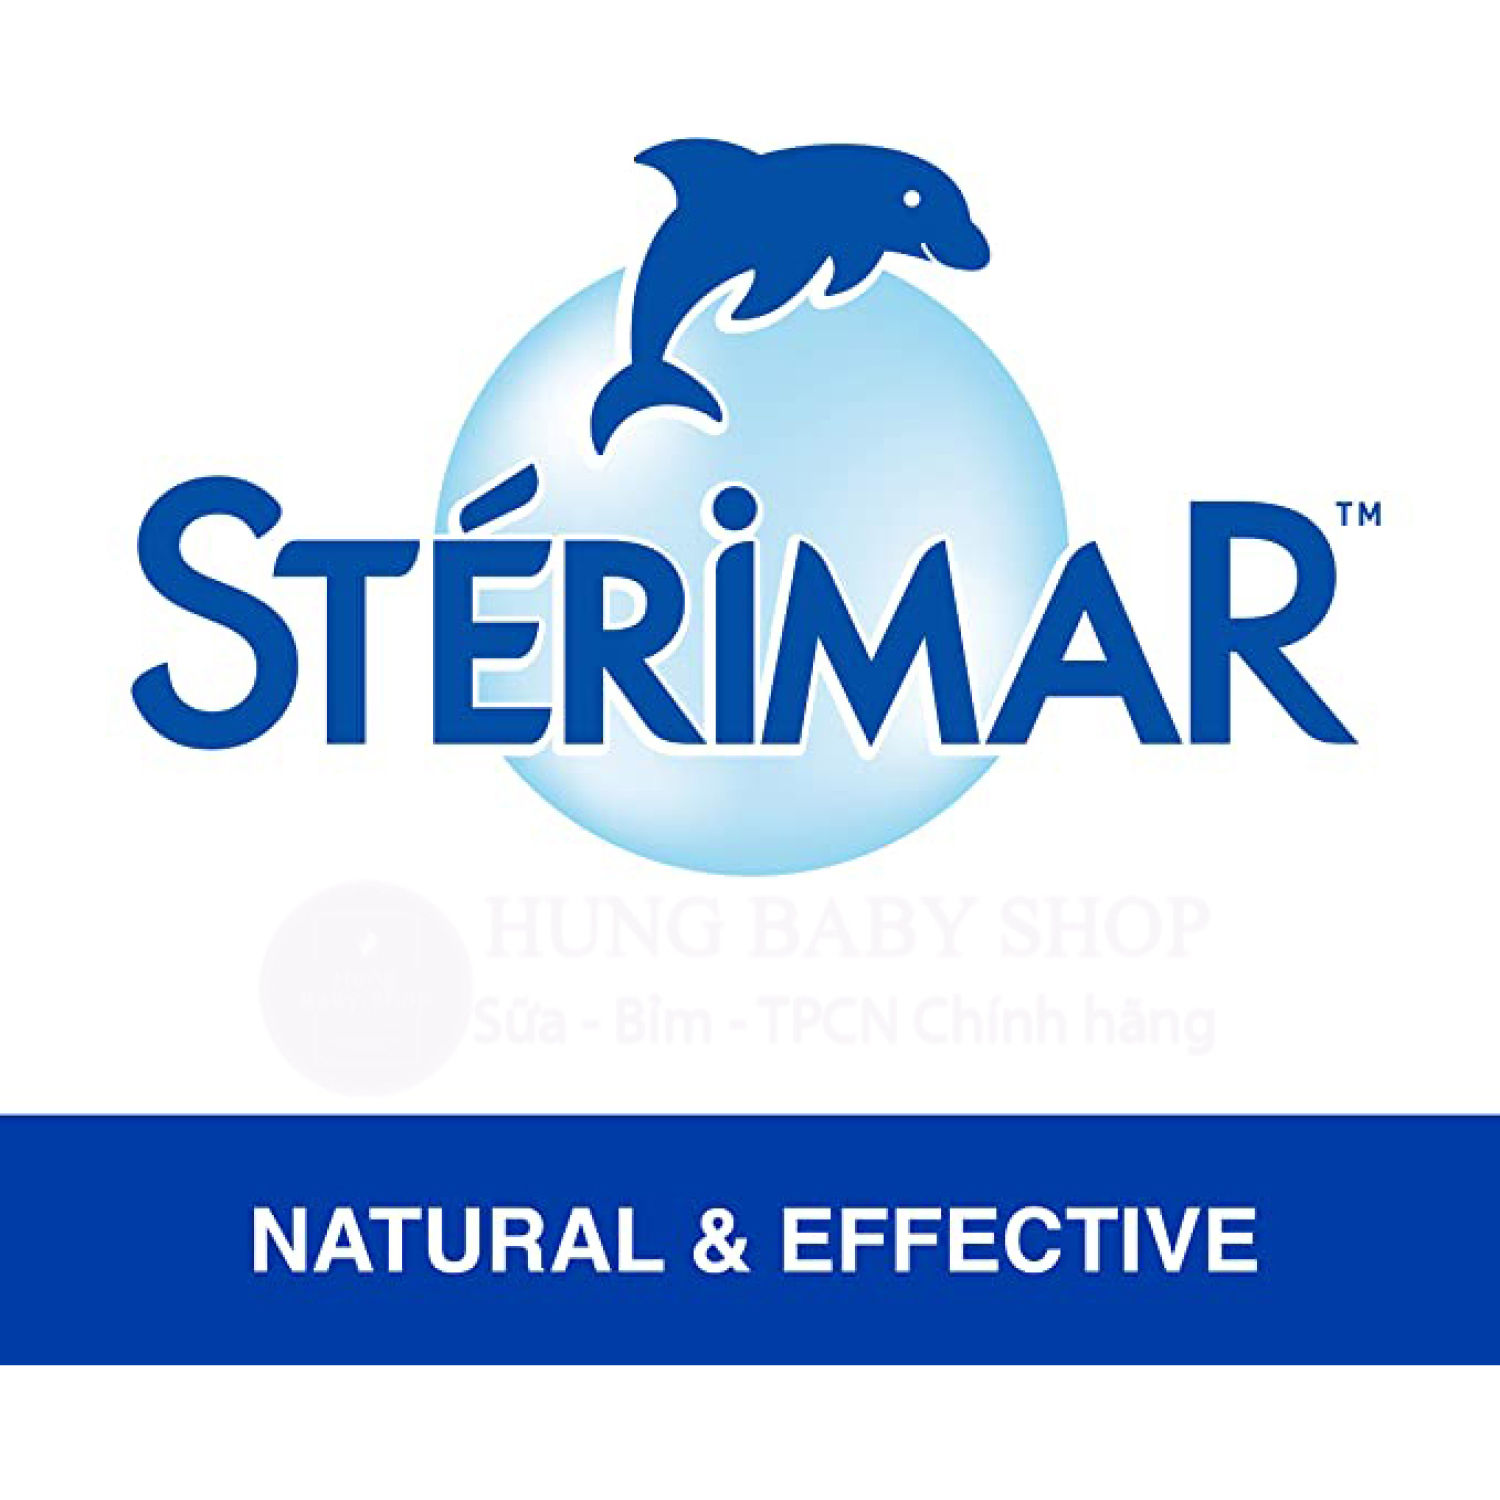 Xịt mũi cá heo Sterimar từ Pháp - Chai xịt mũi nước muối biển Pháp 100ml